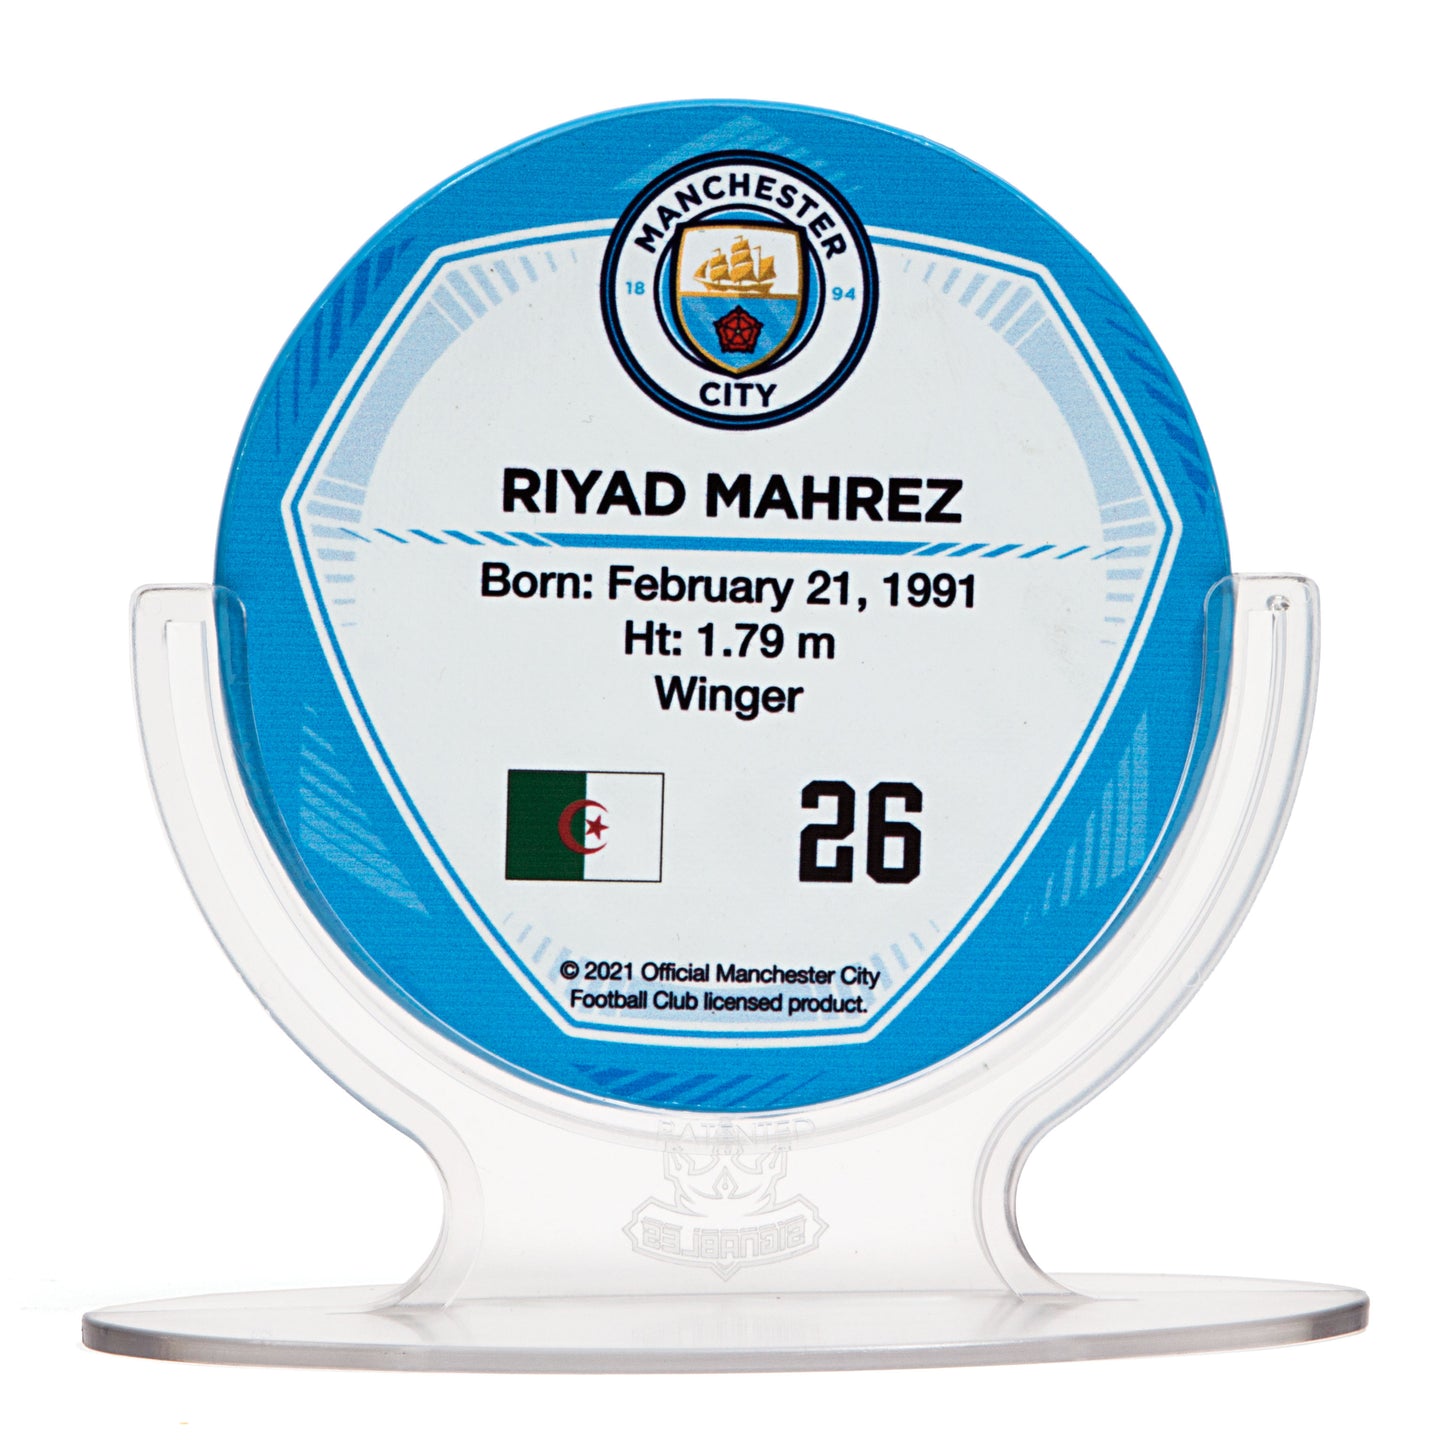 Riyad Mahrez - Manchester City F.C. Signables Collectible